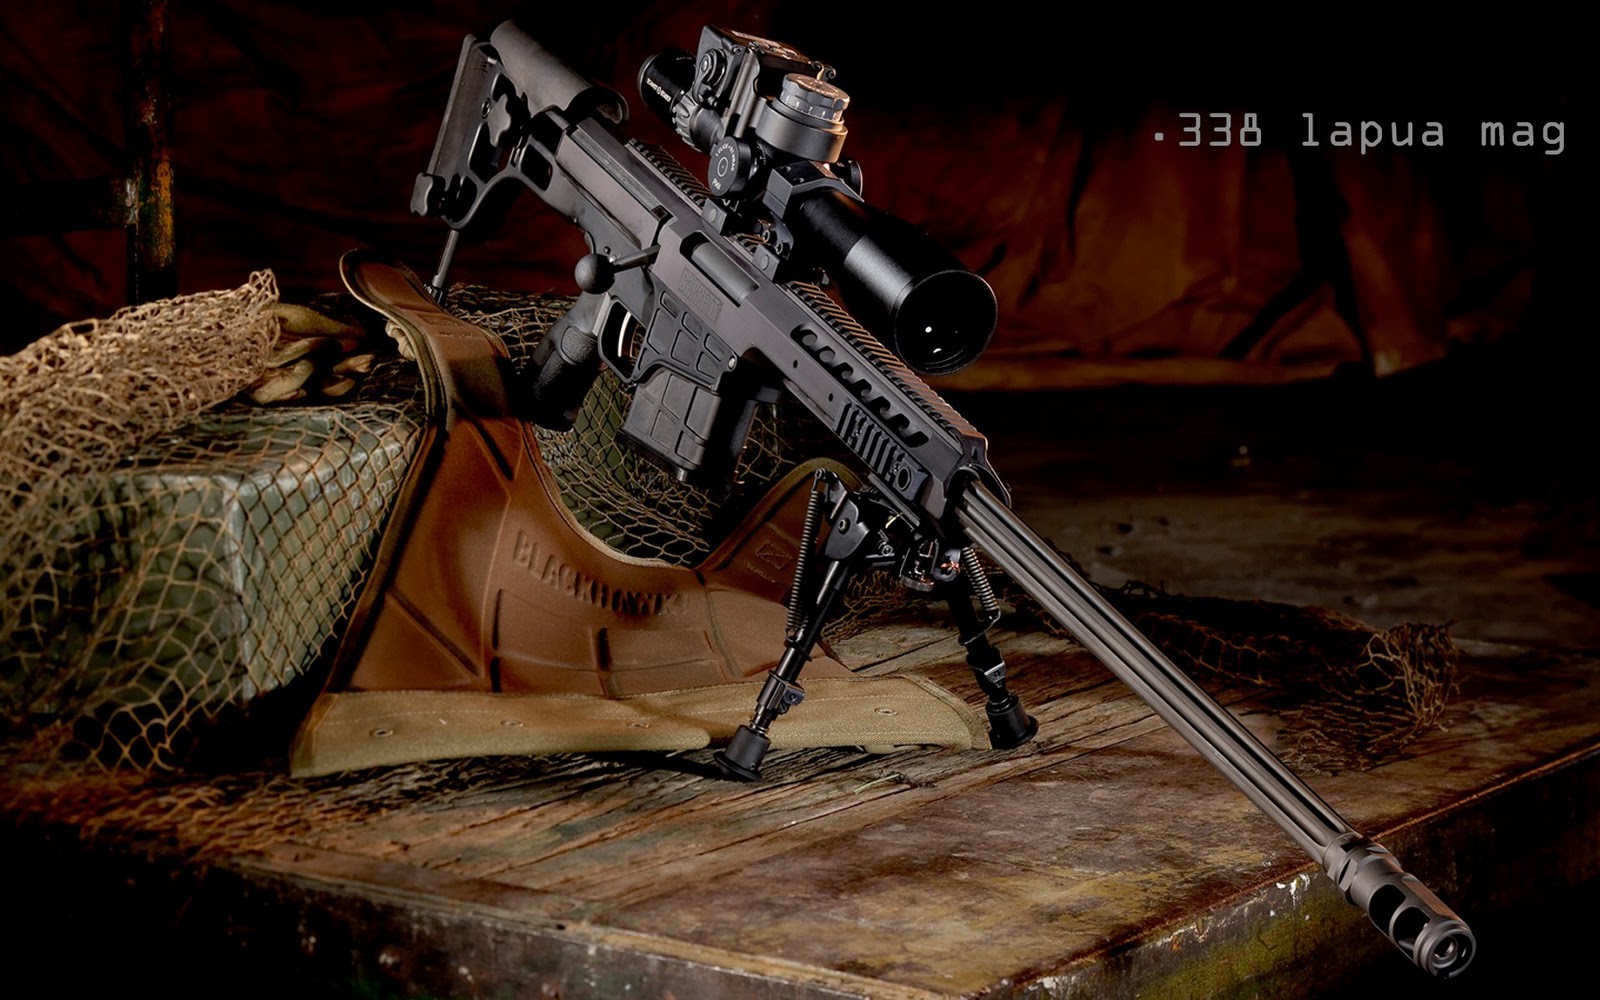 Barett 98b Lapua HD Sniper Wallpaper In